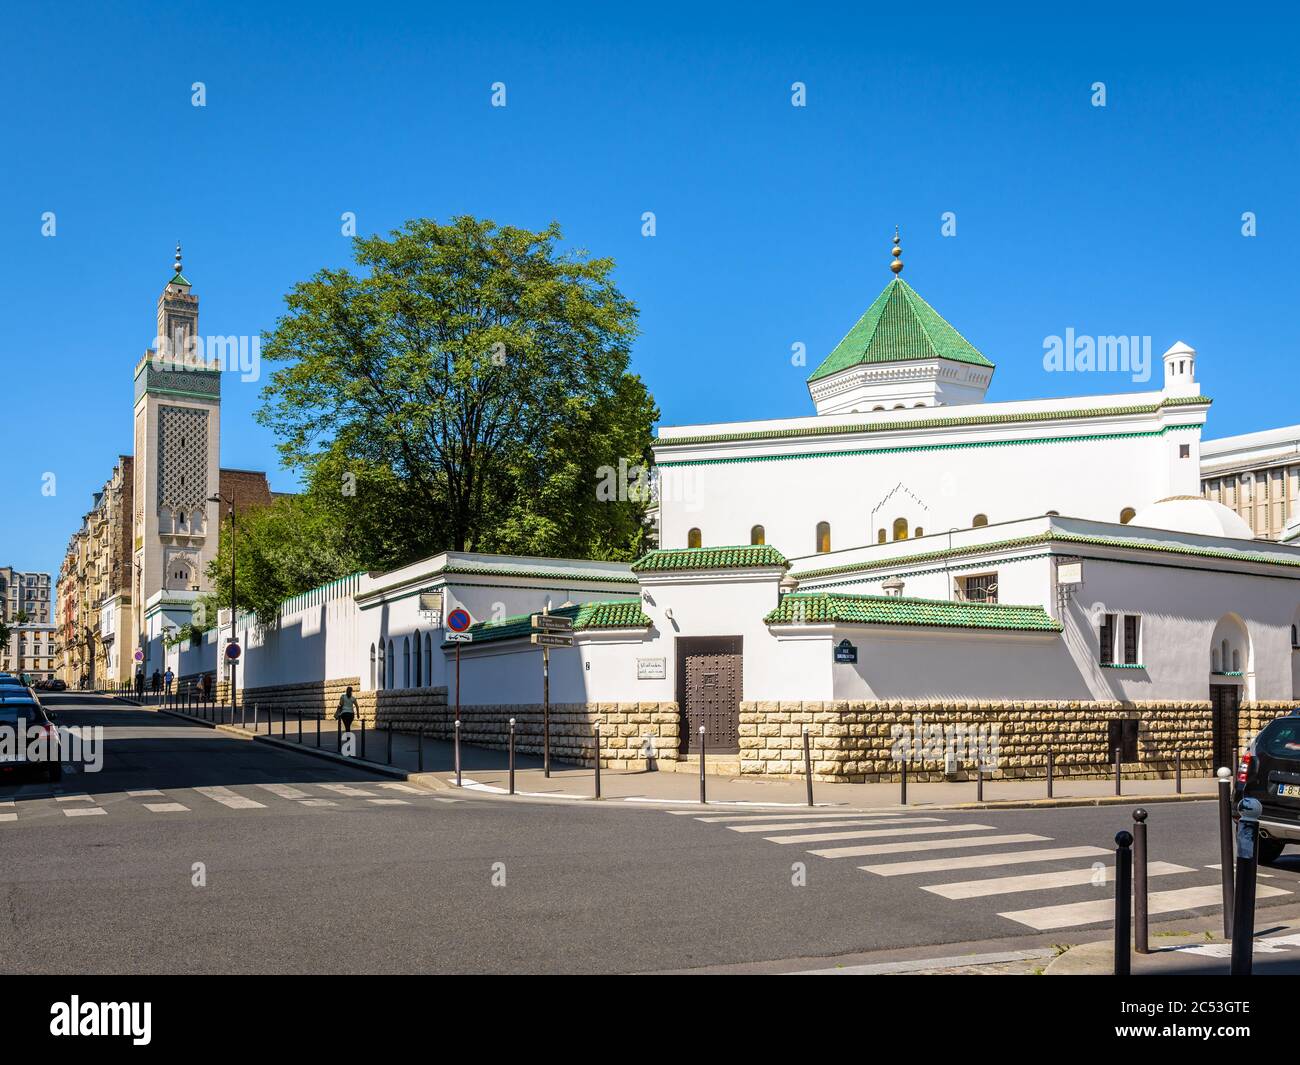 Vista generale della Grande Moschea di Parigi con il minareto alto 33 metri sulla sinistra e la sala di preghiera sormontata da una cupola con piastrelle verdi sul rish Foto Stock